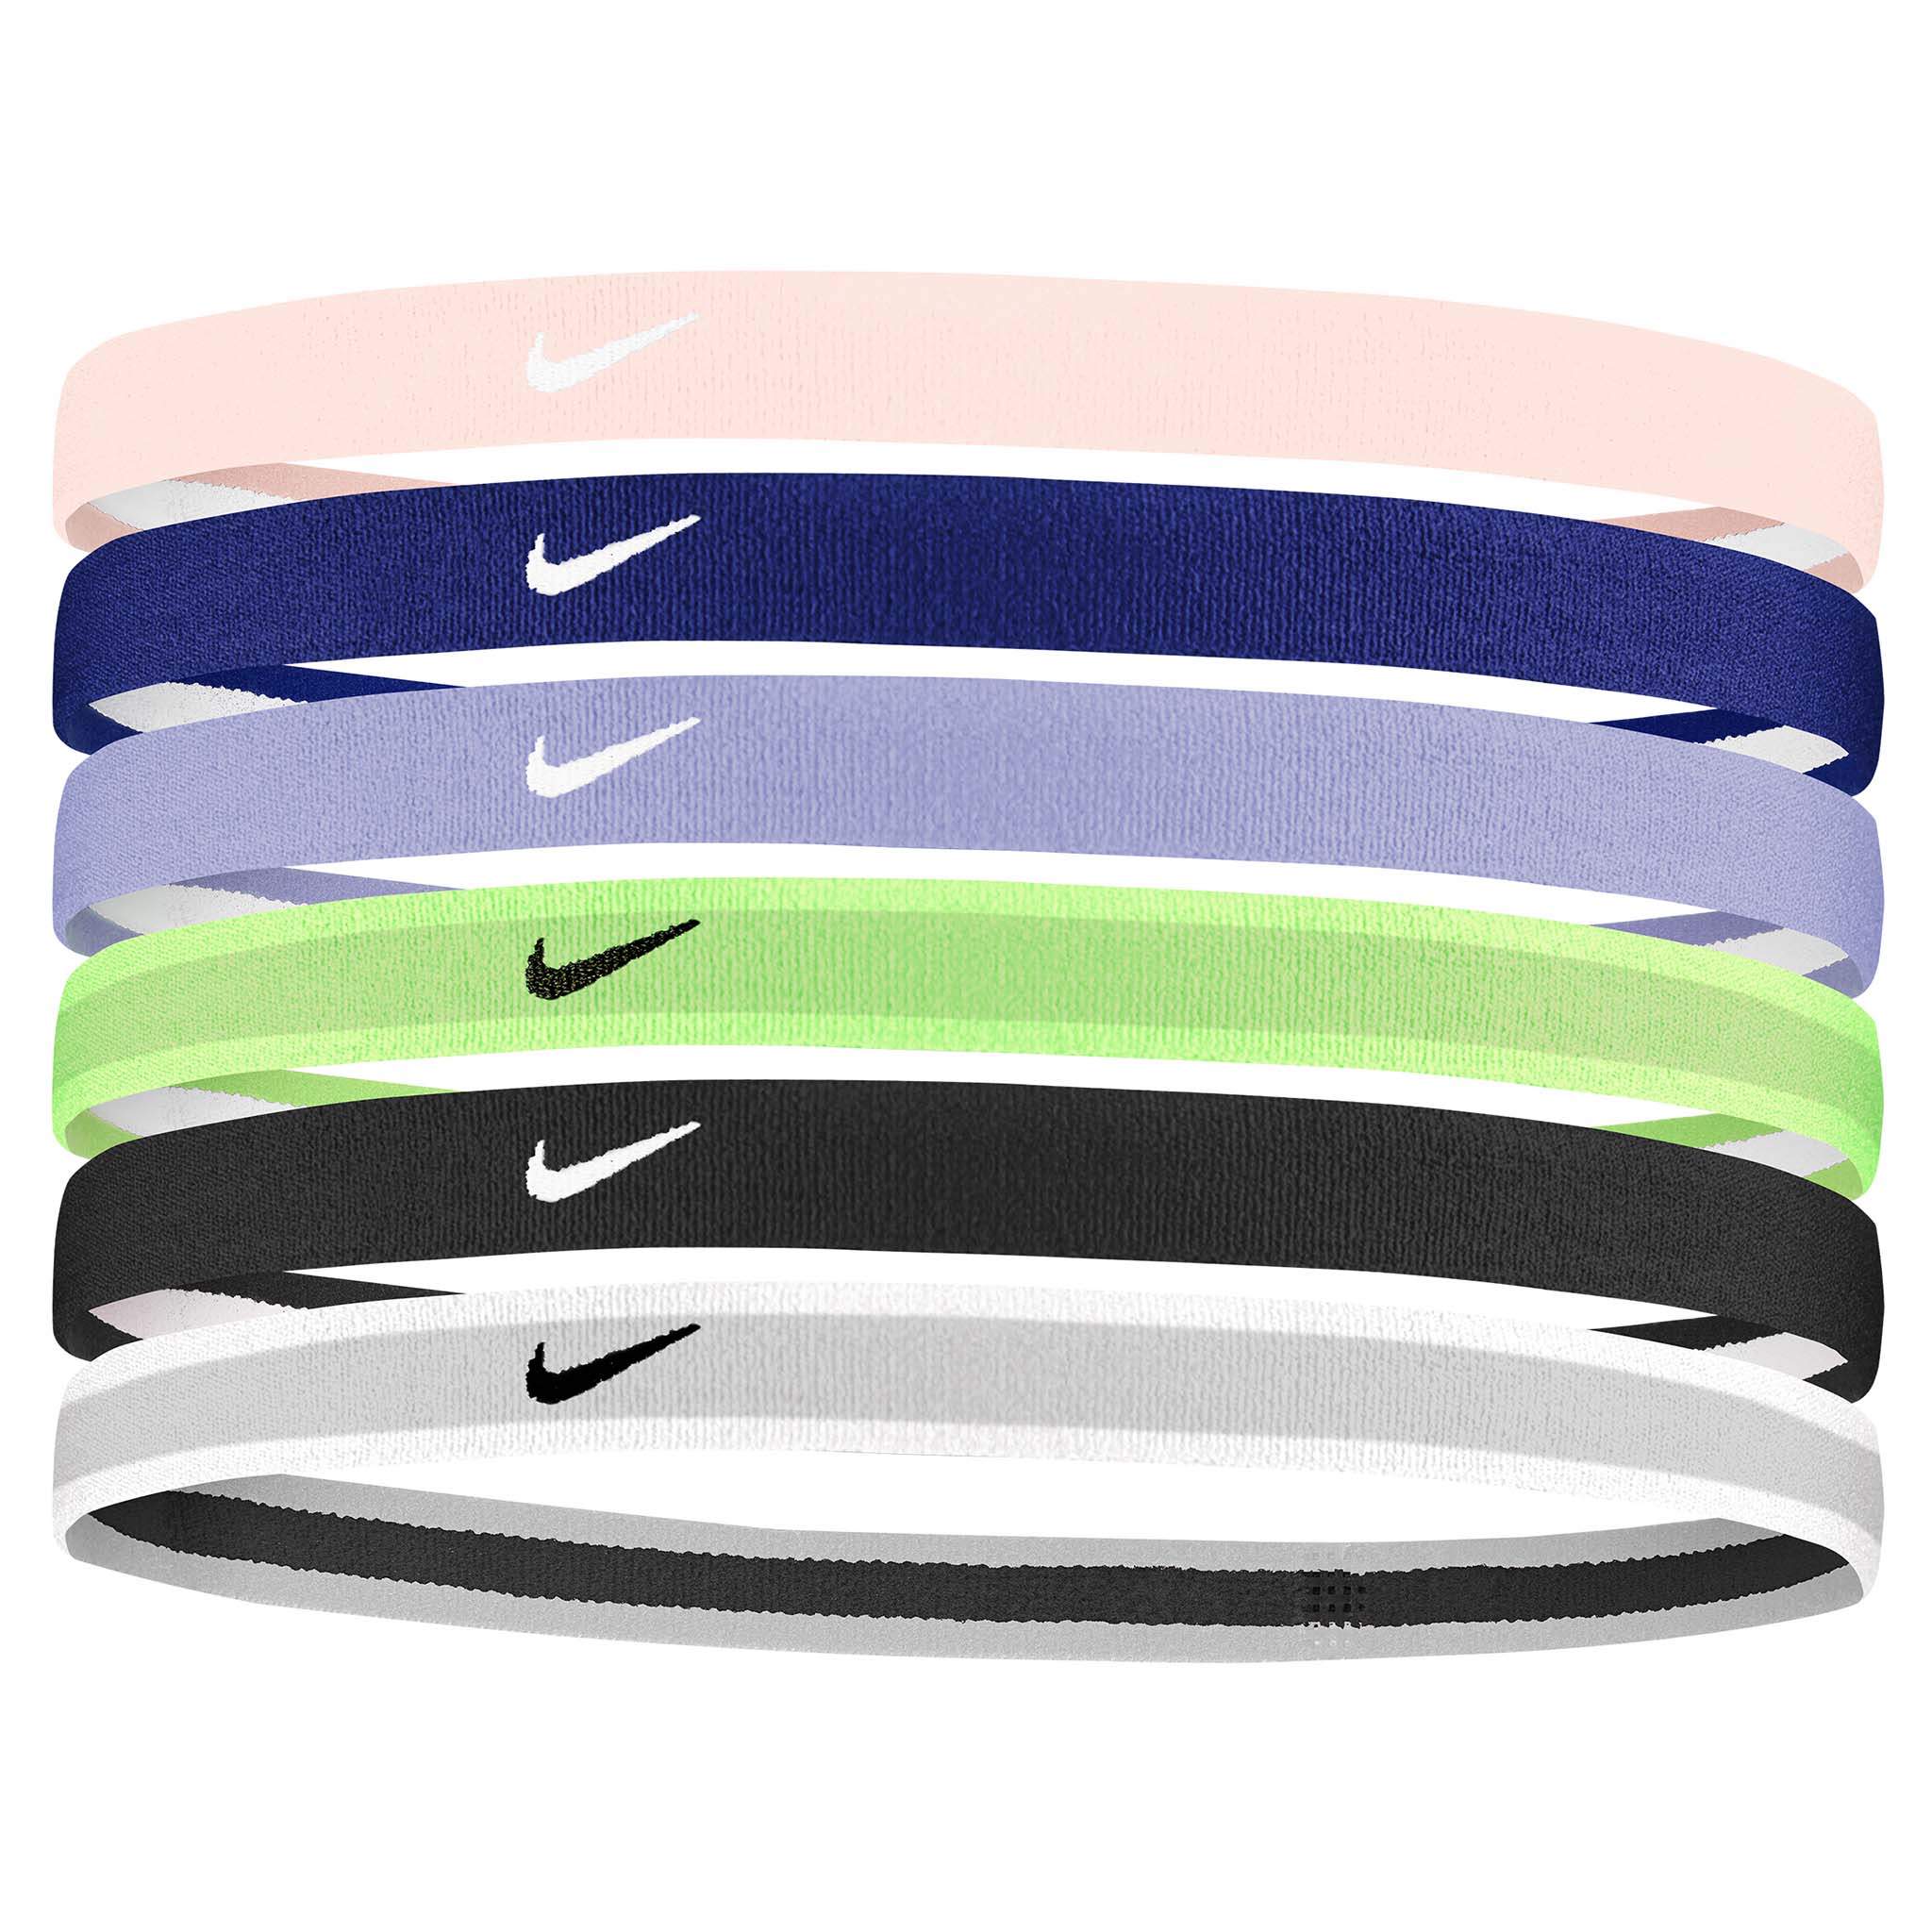 Les huit meilleurs bandeaux de sport Nike pour votre entraînement préféré.  Nike FR